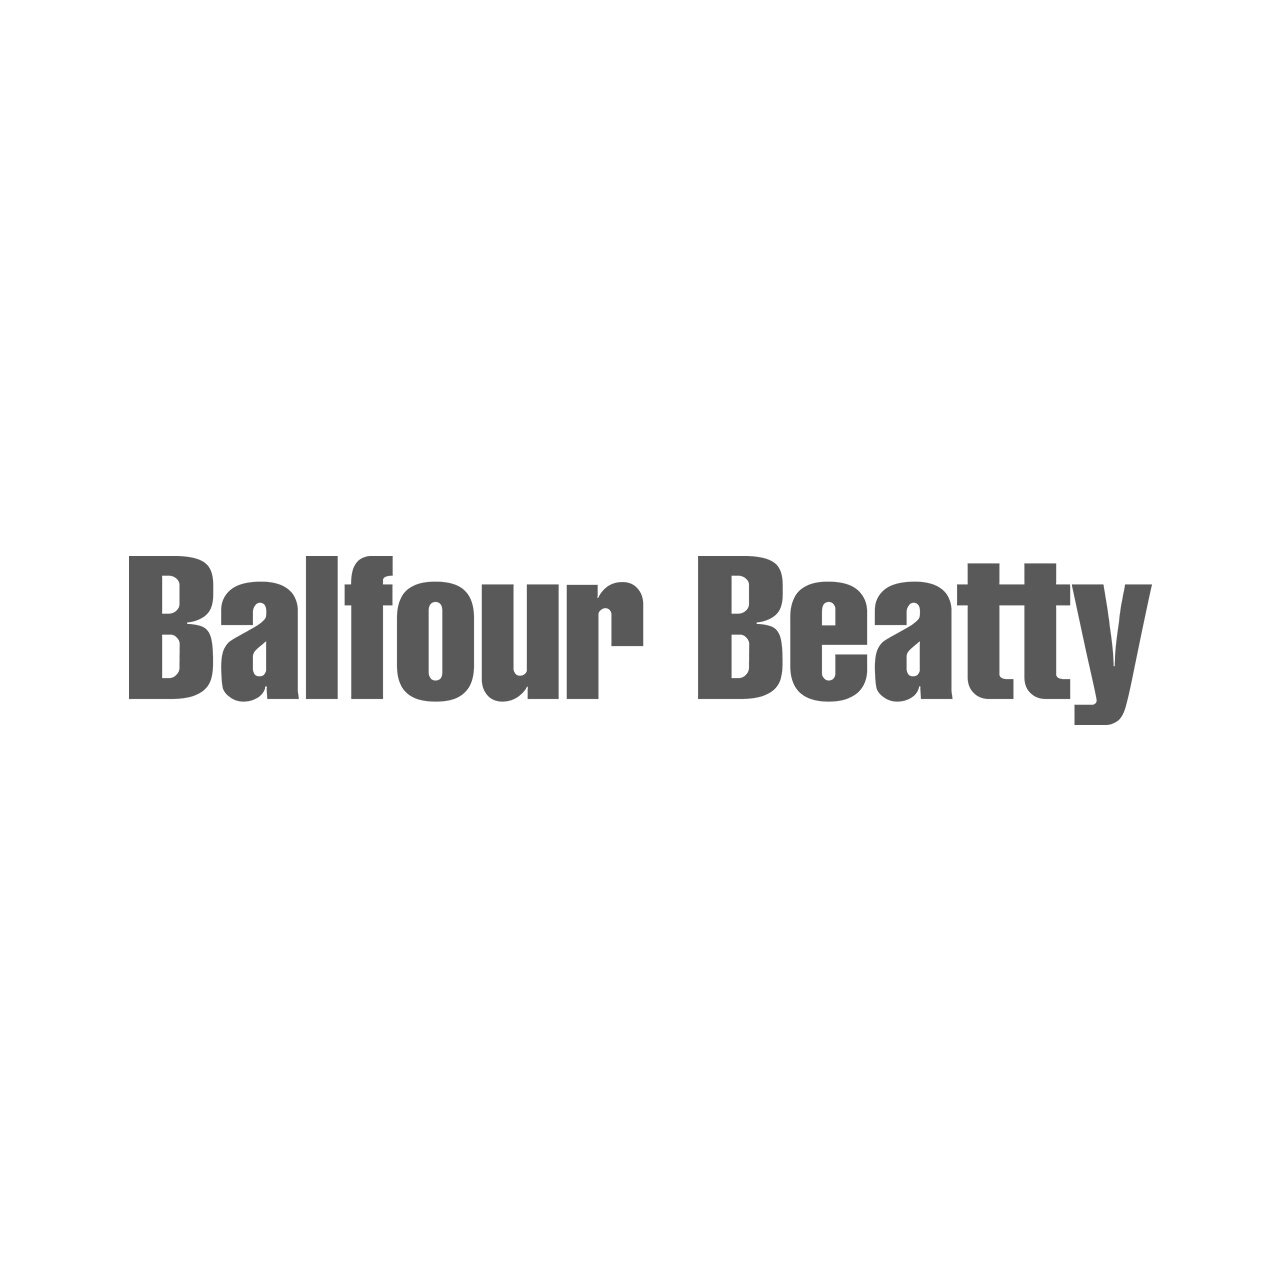 BalfourBeatty.jpg